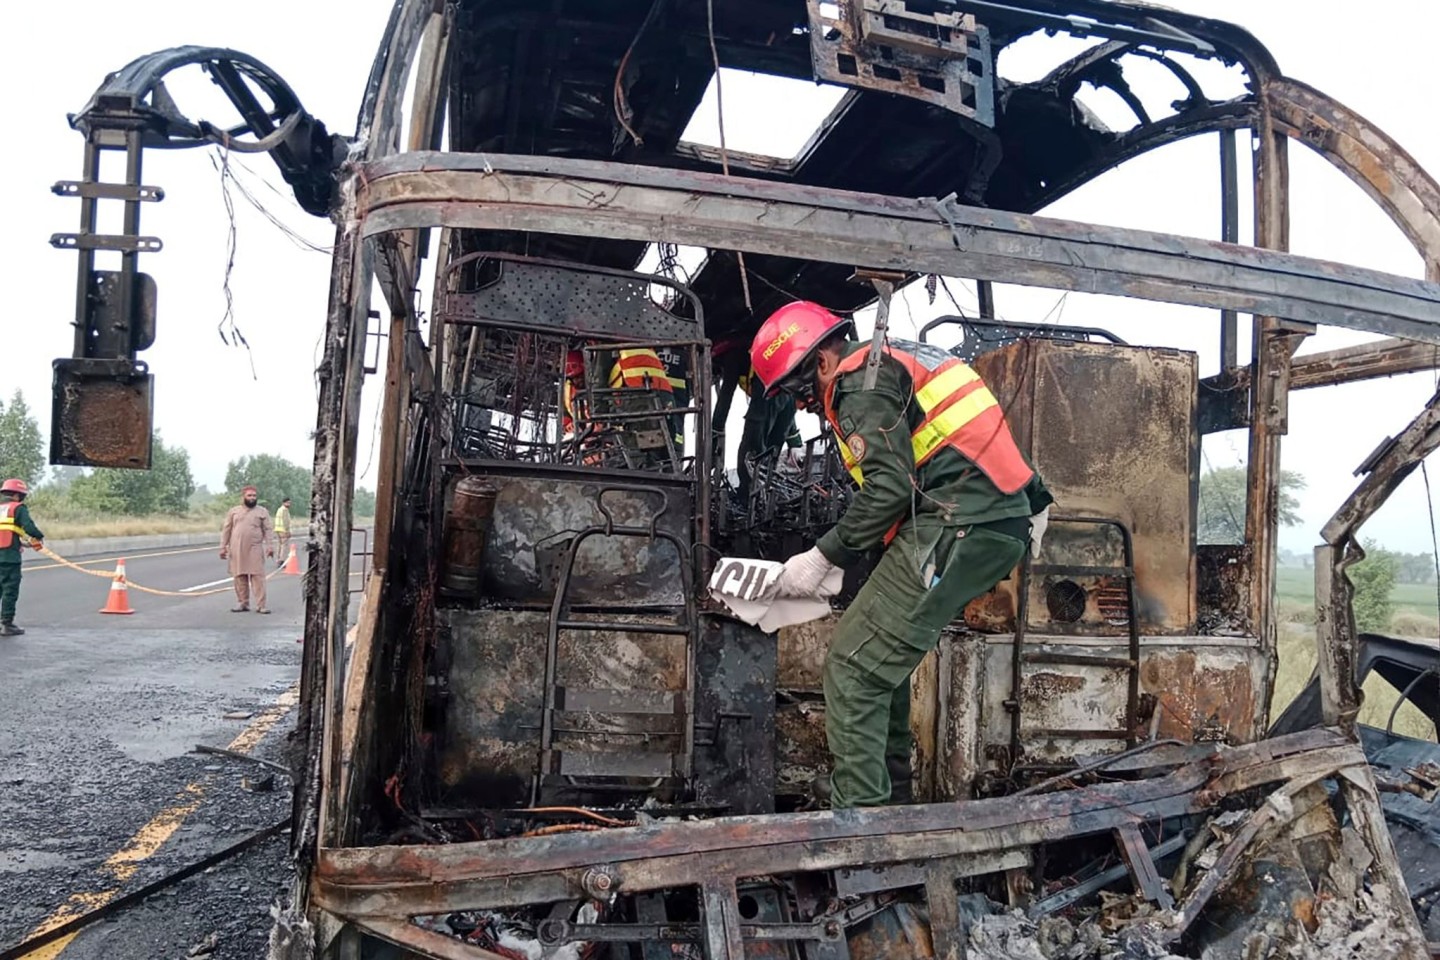 Rettungskräfte untersuchen den verbrannten Bus an der Unfallstelle auf einer Autobahn.